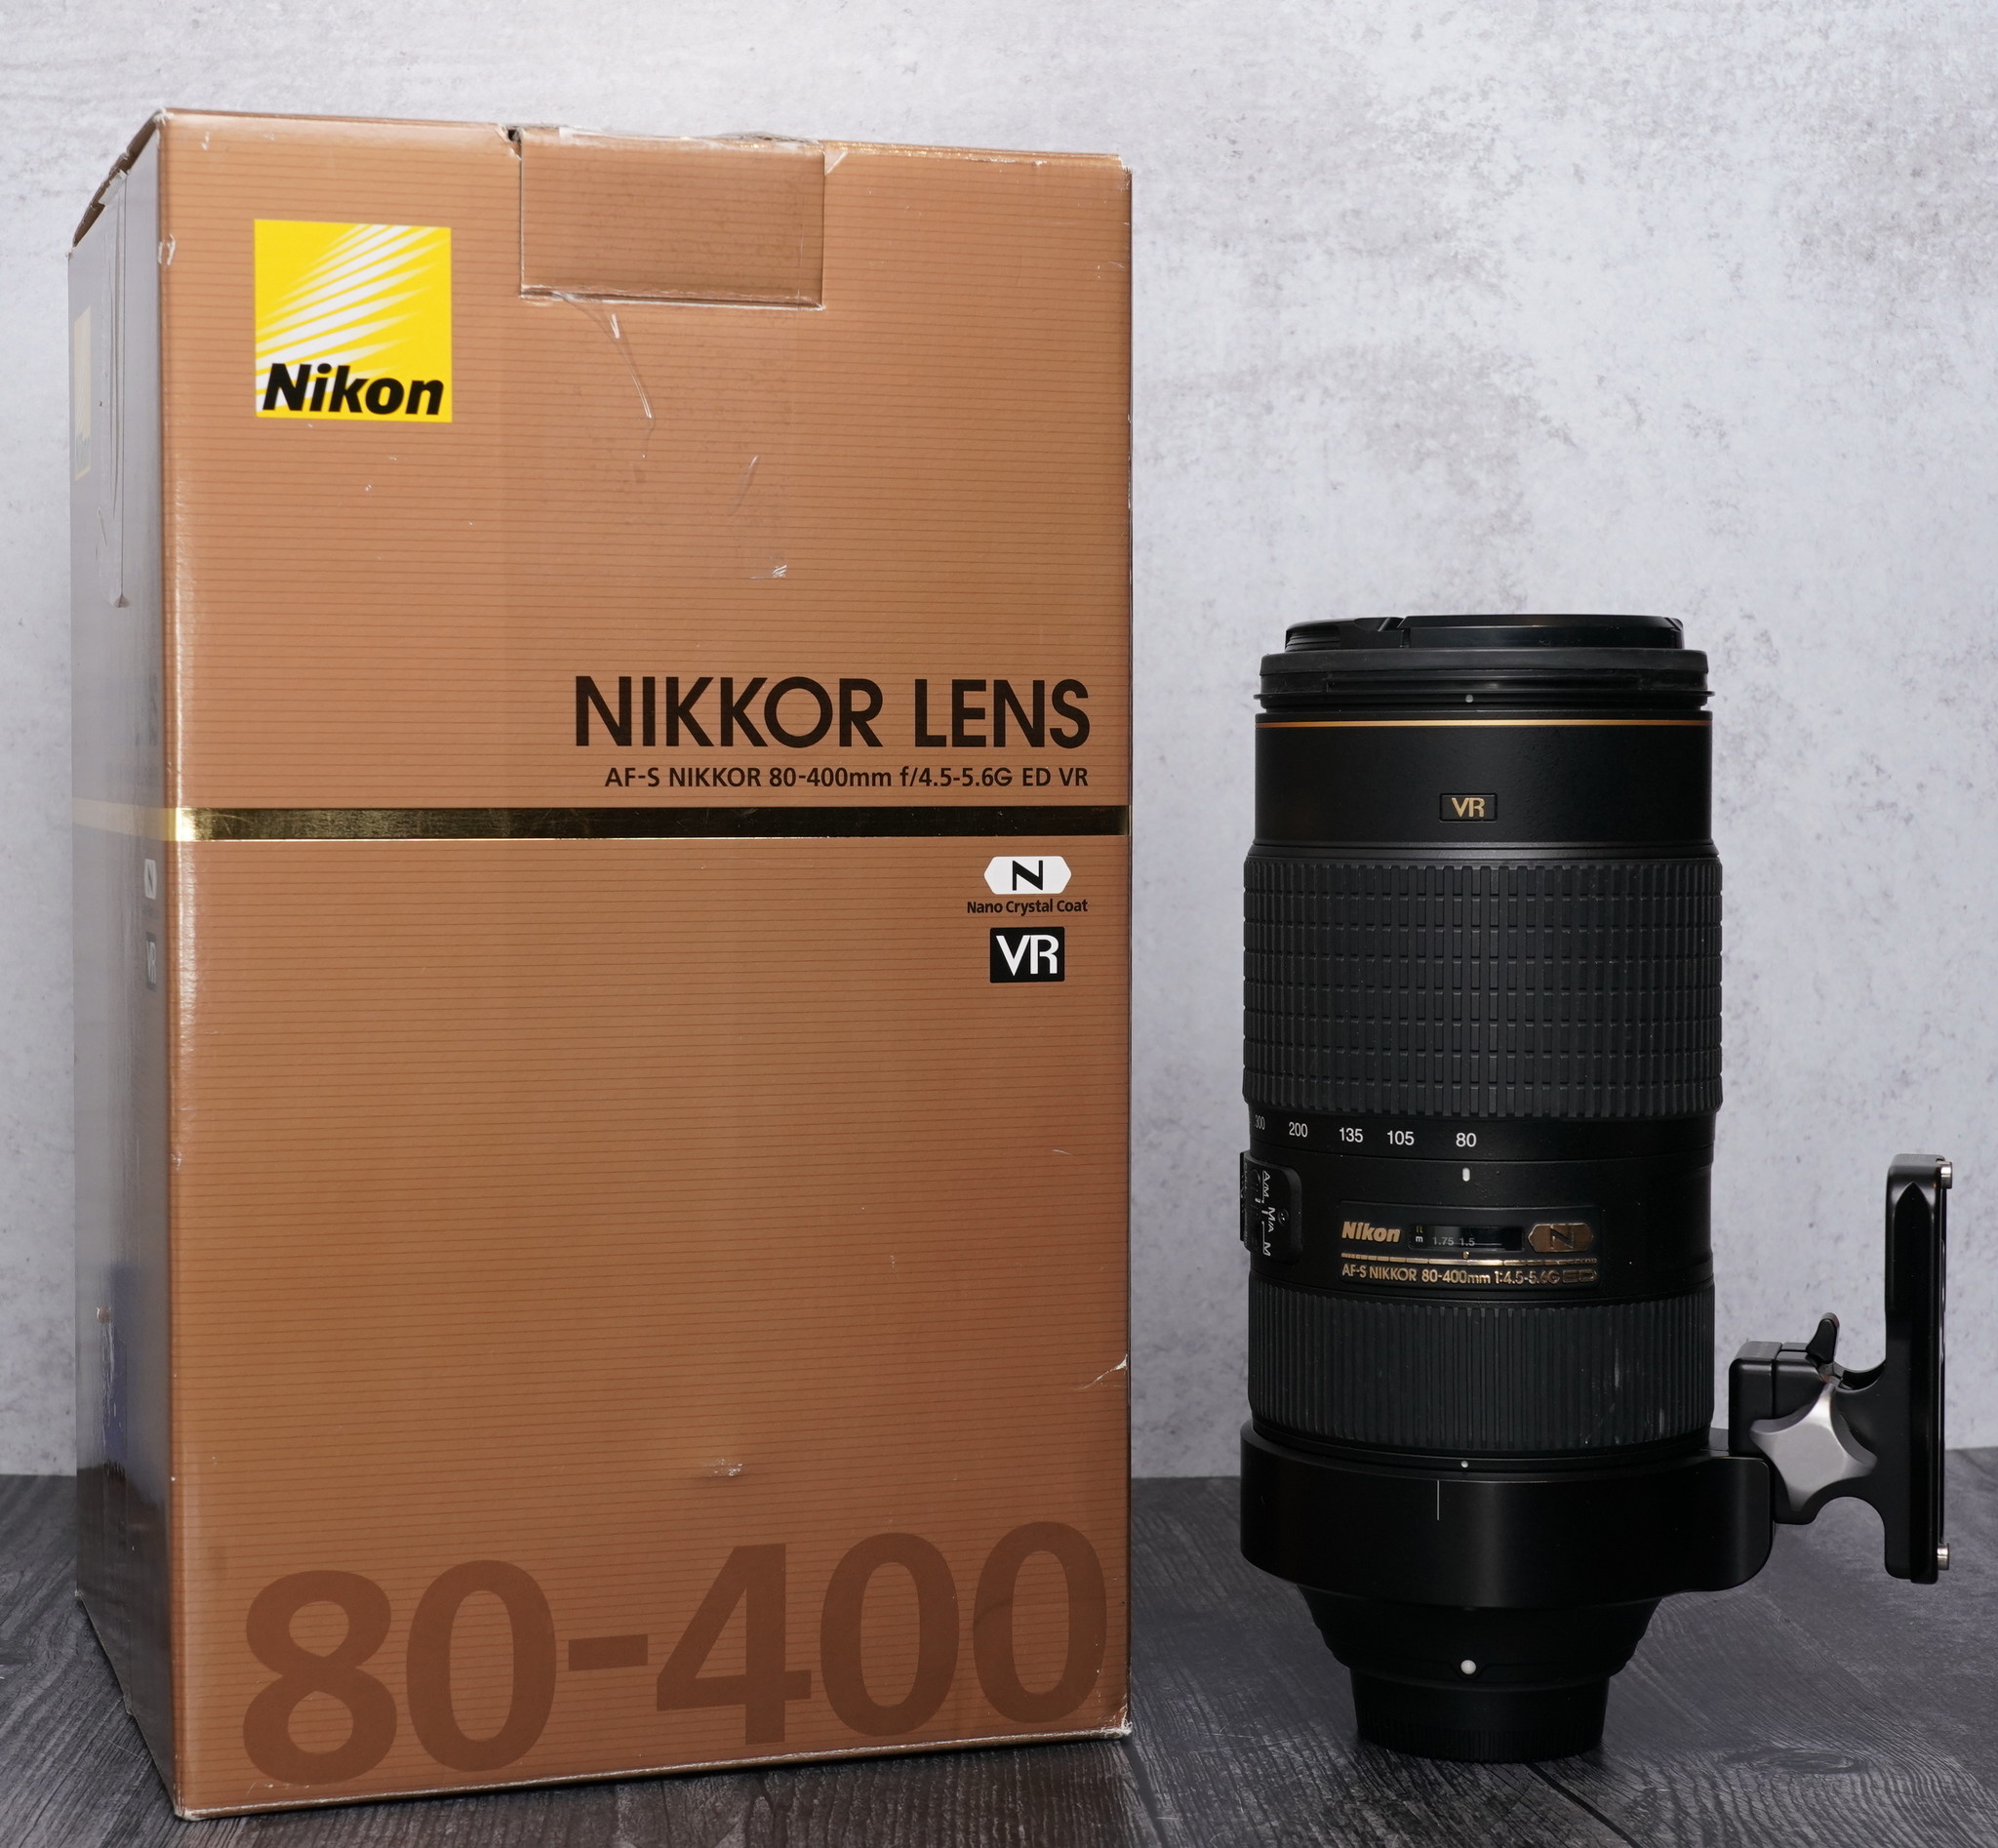 Nikon AF-S NIKKOR 80-400mm f/4.5-5.6G ED VR shimizu-kazumichi.com